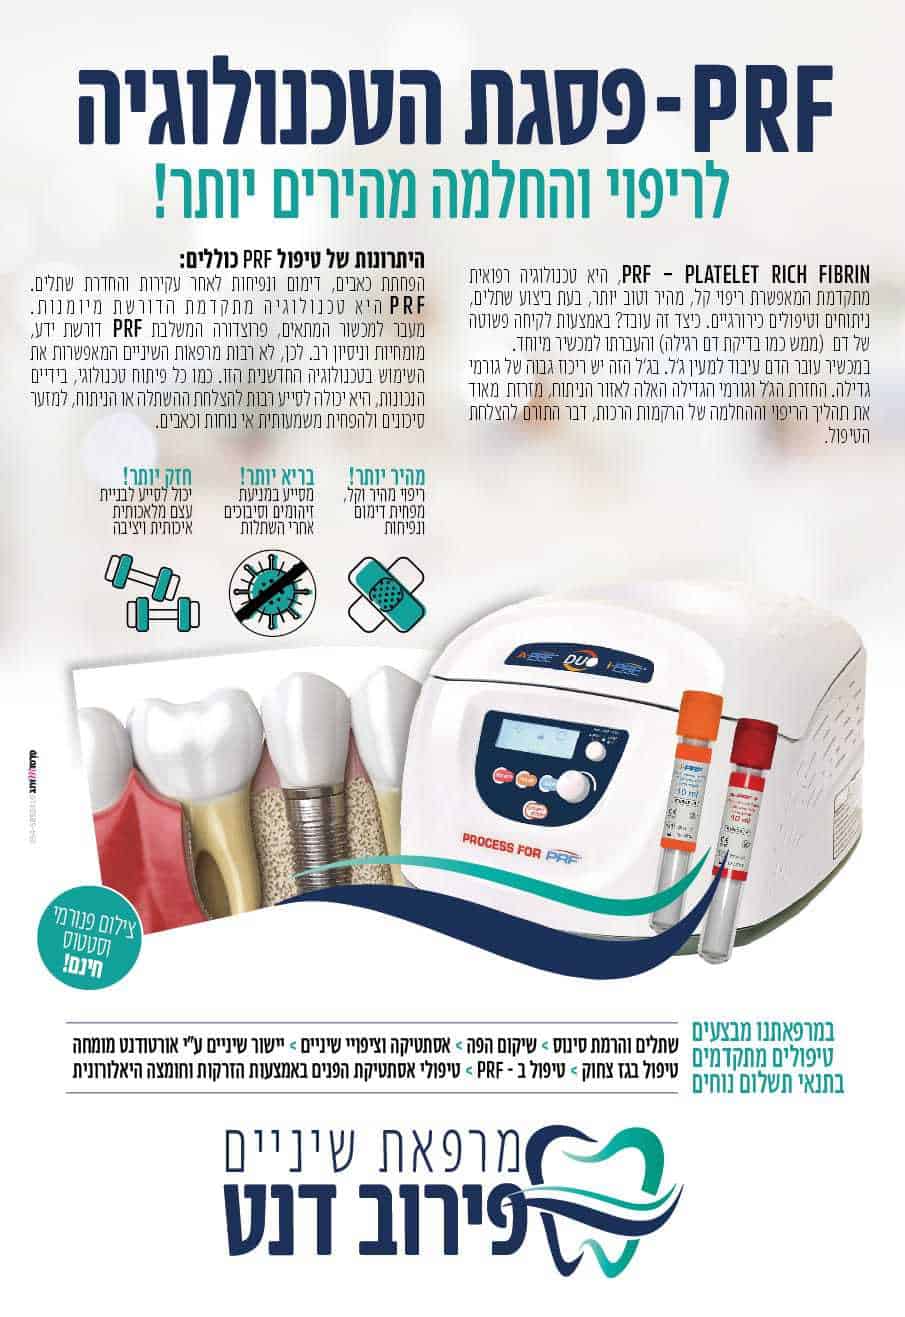 מרפאת פירוב דנט שיניים - PRF פסגת הטכנולוגיה